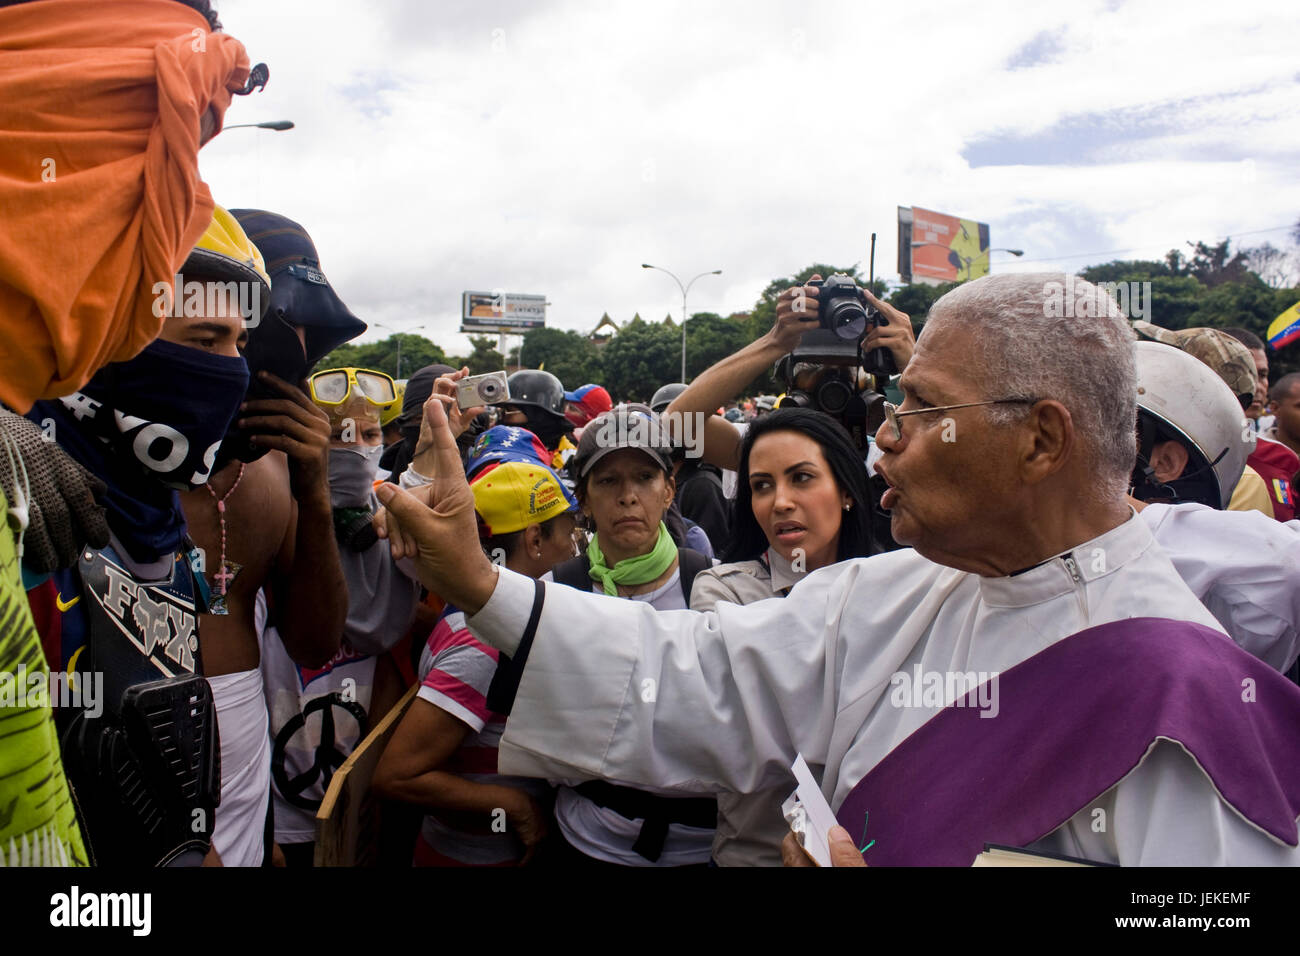 Un prêtre parle et bénir un groupe de manifestants à l'extérieur d'une base aérienne militaire au cours d'une manifestation contre le président Maduro. Banque D'Images